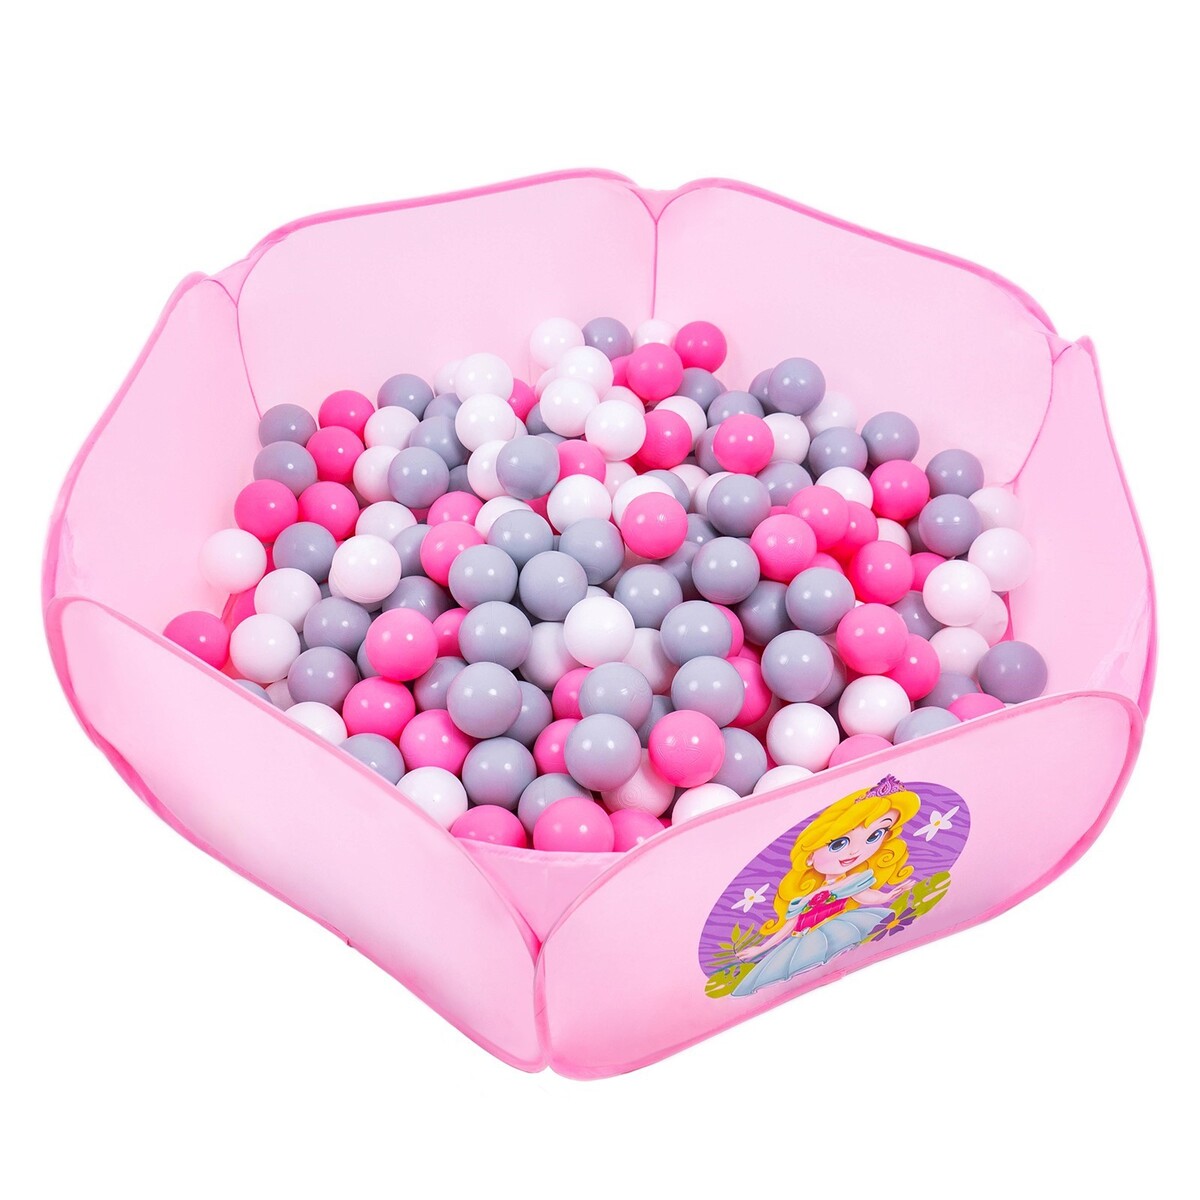 Шарики для сухого бассейна с рисунком, диаметр шара 7,5 см, набор 150 штук, цвет розовый, белый, серый шарики для сухого бассейна 100 штук диаметр 5 см